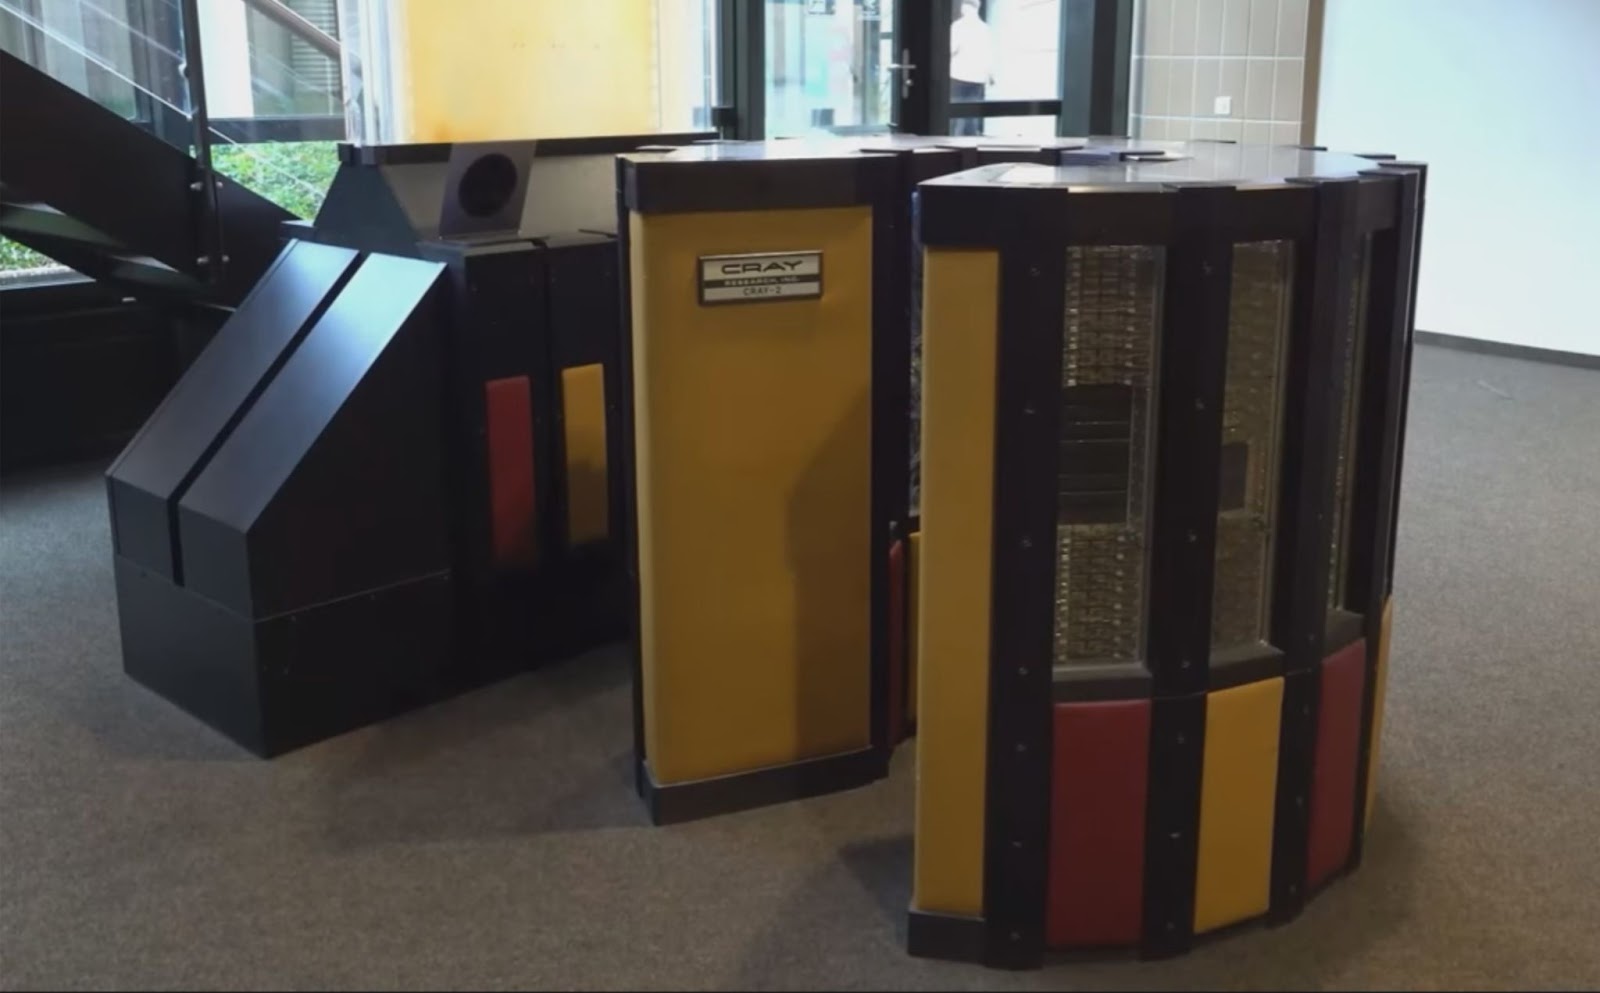 Компьютер Cray-2 из музея в Швейцарии. Фото: скриншот телемоста из трансляции музея Яндекса